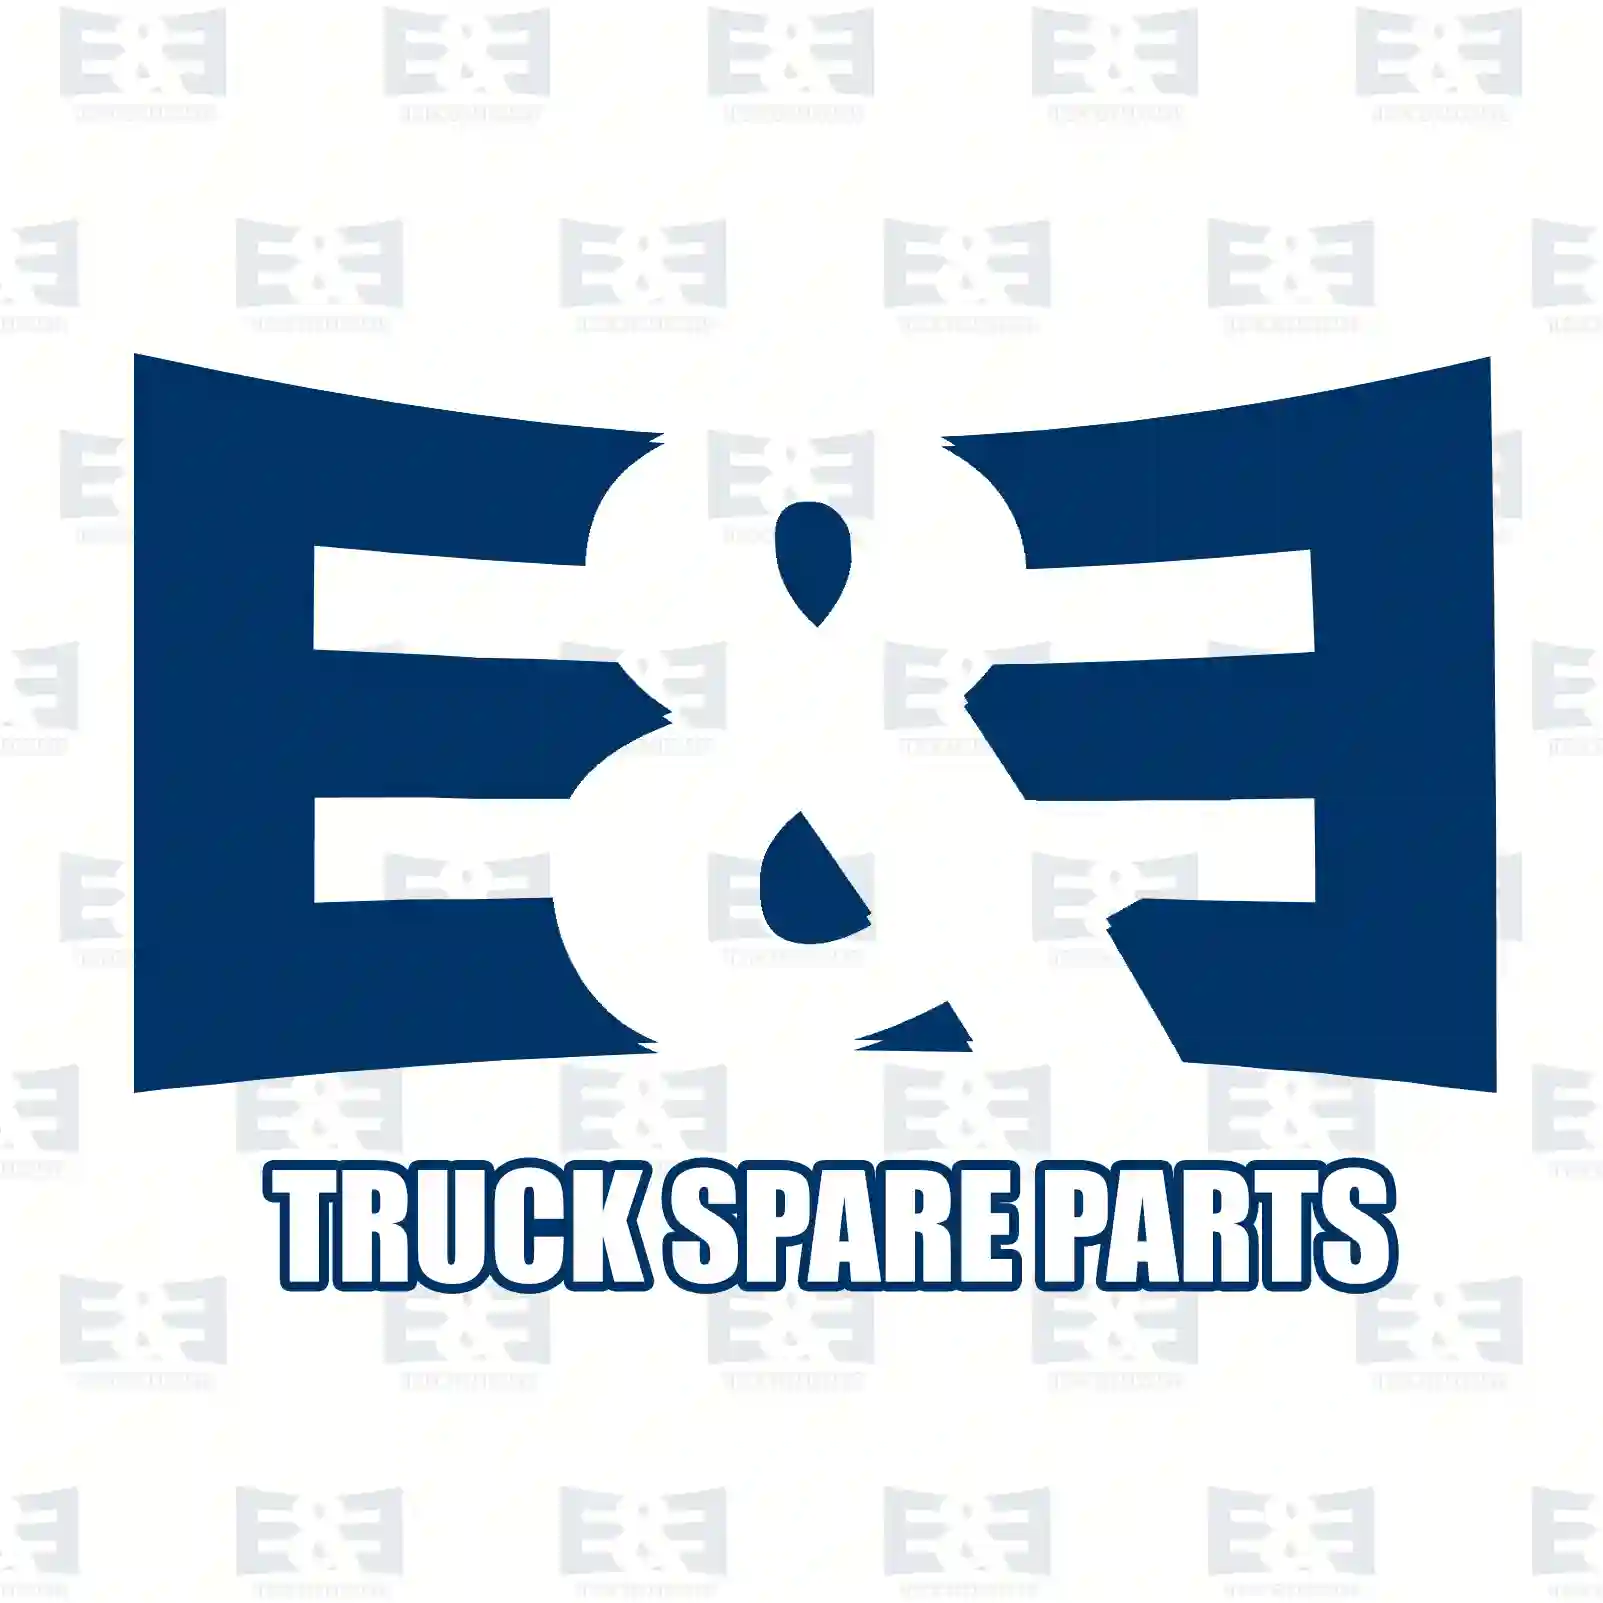 Compressor, 2E2296749, 51541007114, 51541007227, 51541007248, 2V5100759 ||  2E2296749 E&E Truck Spare Parts | Truck Spare Parts, Auotomotive Spare Parts Compressor, 2E2296749, 51541007114, 51541007227, 51541007248, 2V5100759 ||  2E2296749 E&E Truck Spare Parts | Truck Spare Parts, Auotomotive Spare Parts